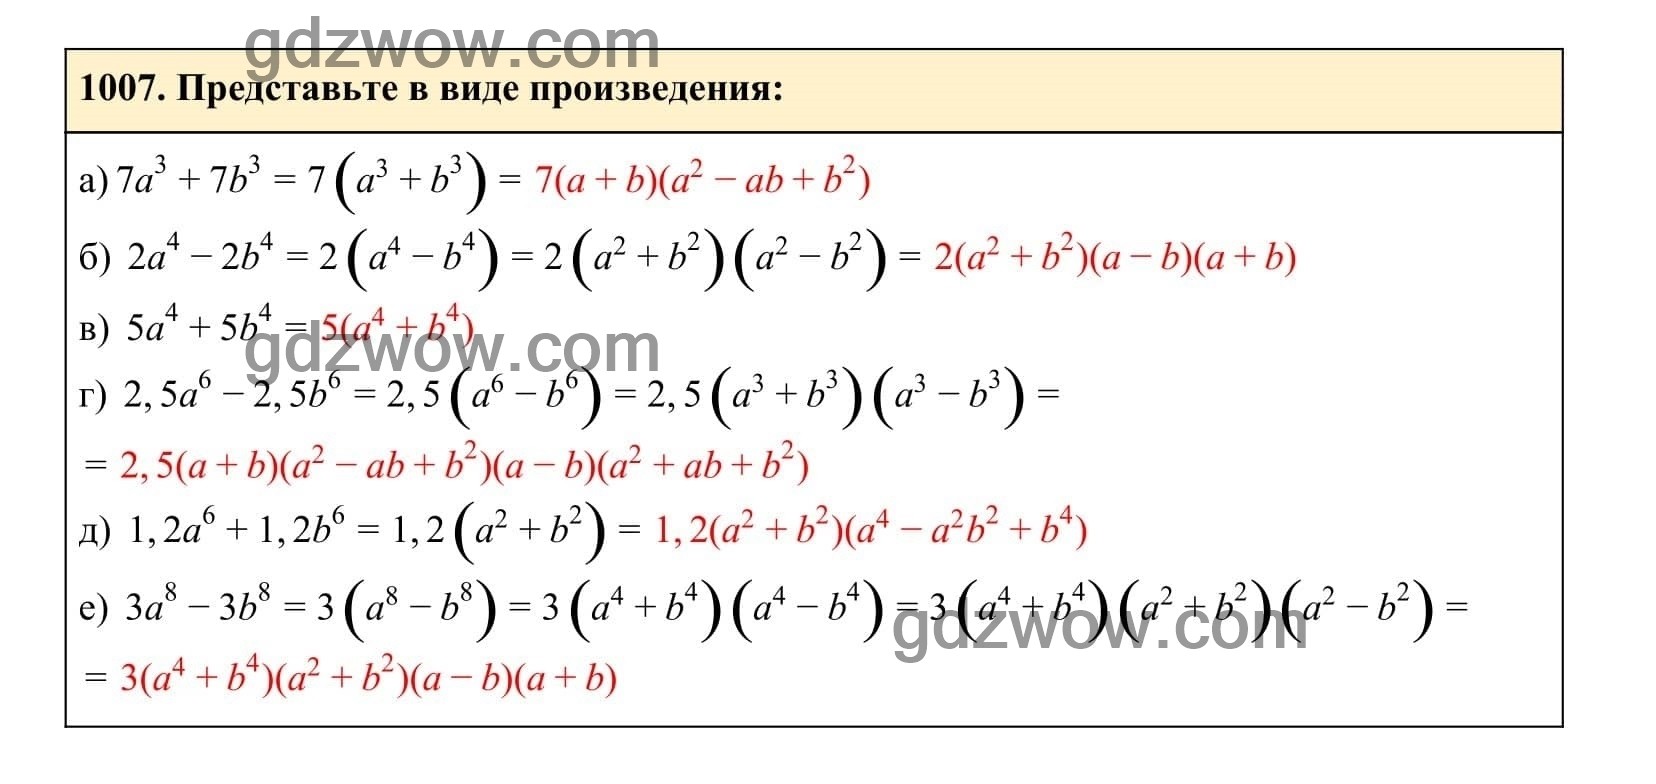 Упражнение 1007 - ГДЗ по Алгебре 7 класс Учебник Макарычев (решебник) - GDZwow